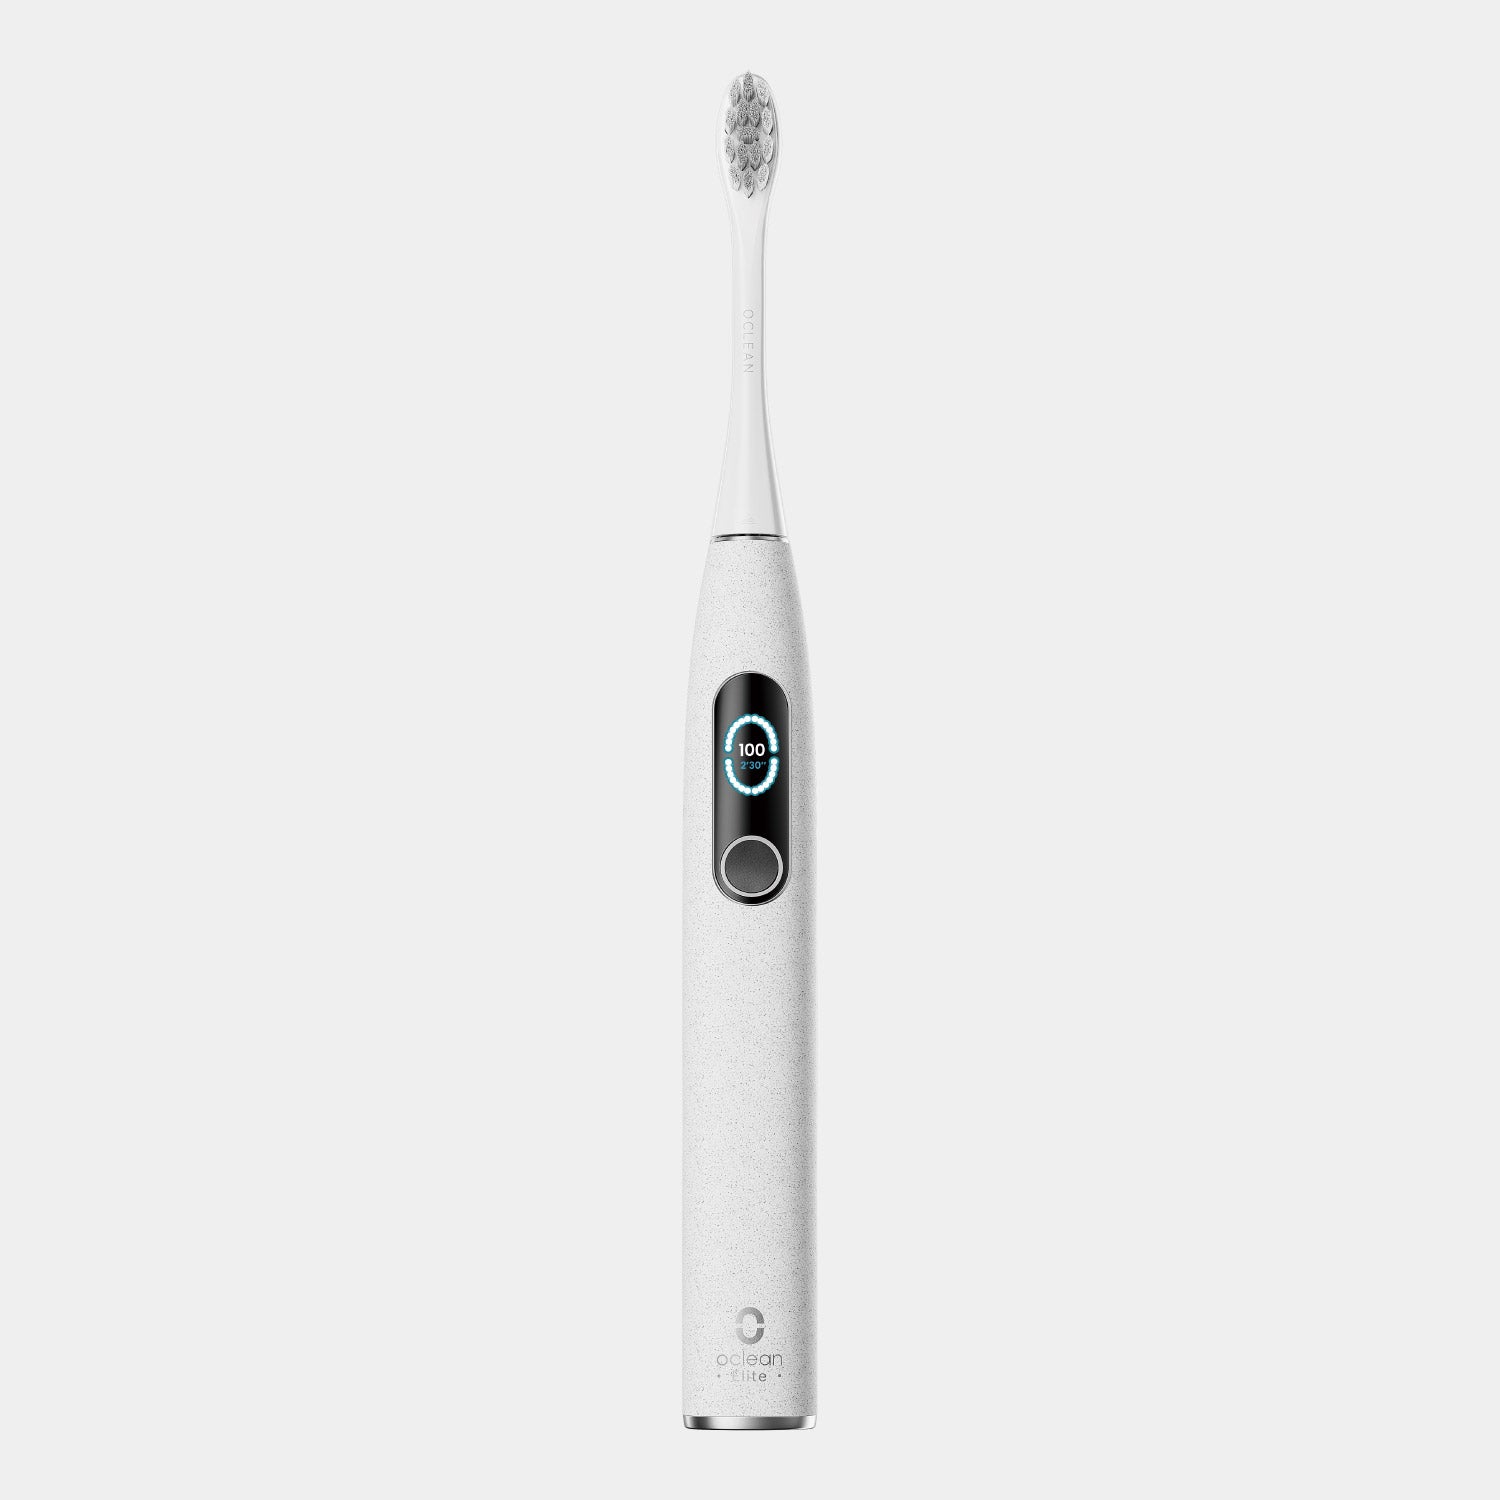 Oclean X Pro Elite Sonic elektromos fogkefe - fogkefék - Cleanan Global Store